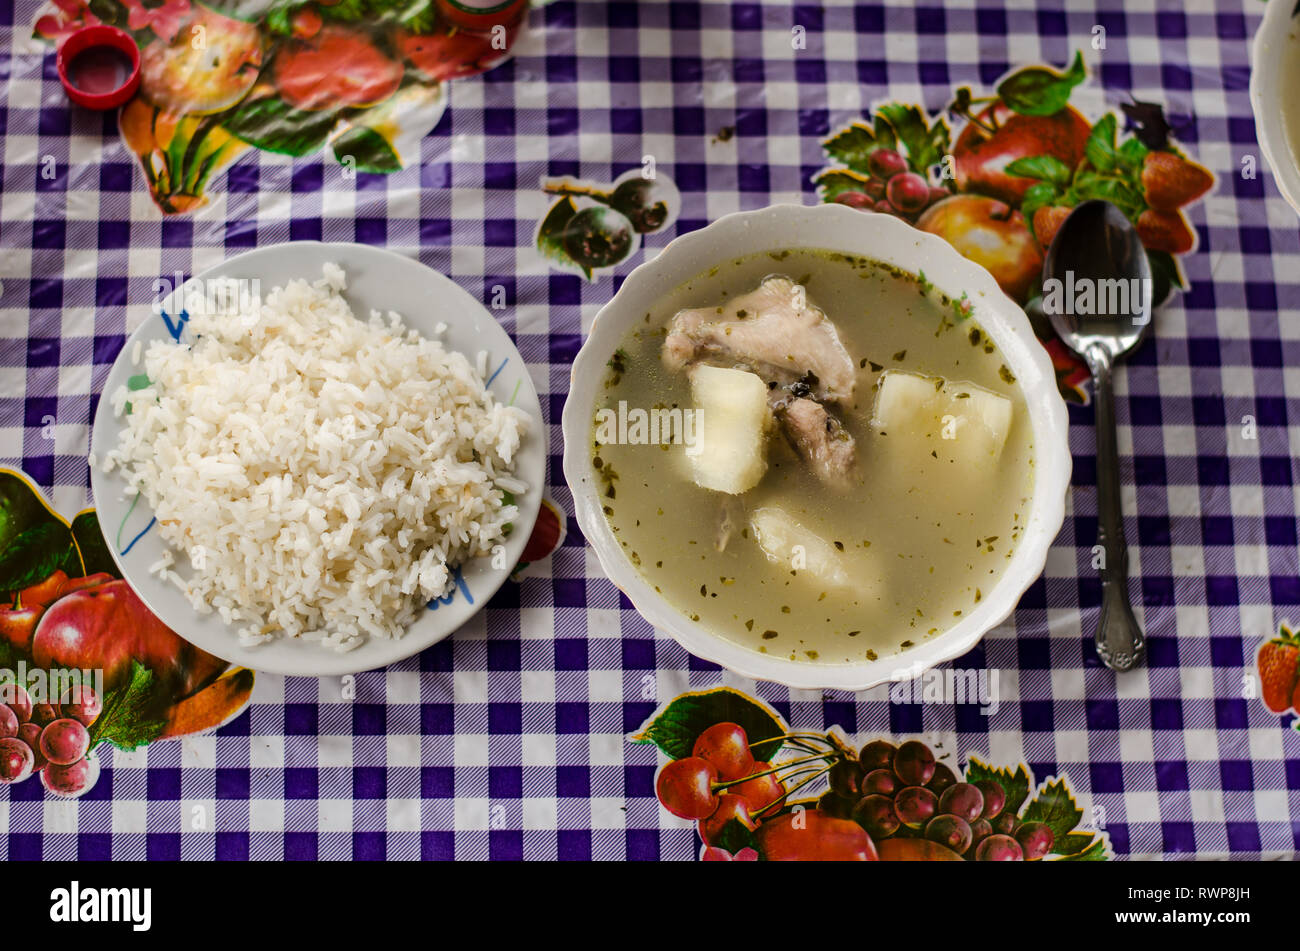 Traditionelle panamaschen Essen, bekannt als "Sancocho" oder Hühnersuppe begleitet mit "arroz Blanco' oder weißer Reis, wie üblich serviert. Stockfoto